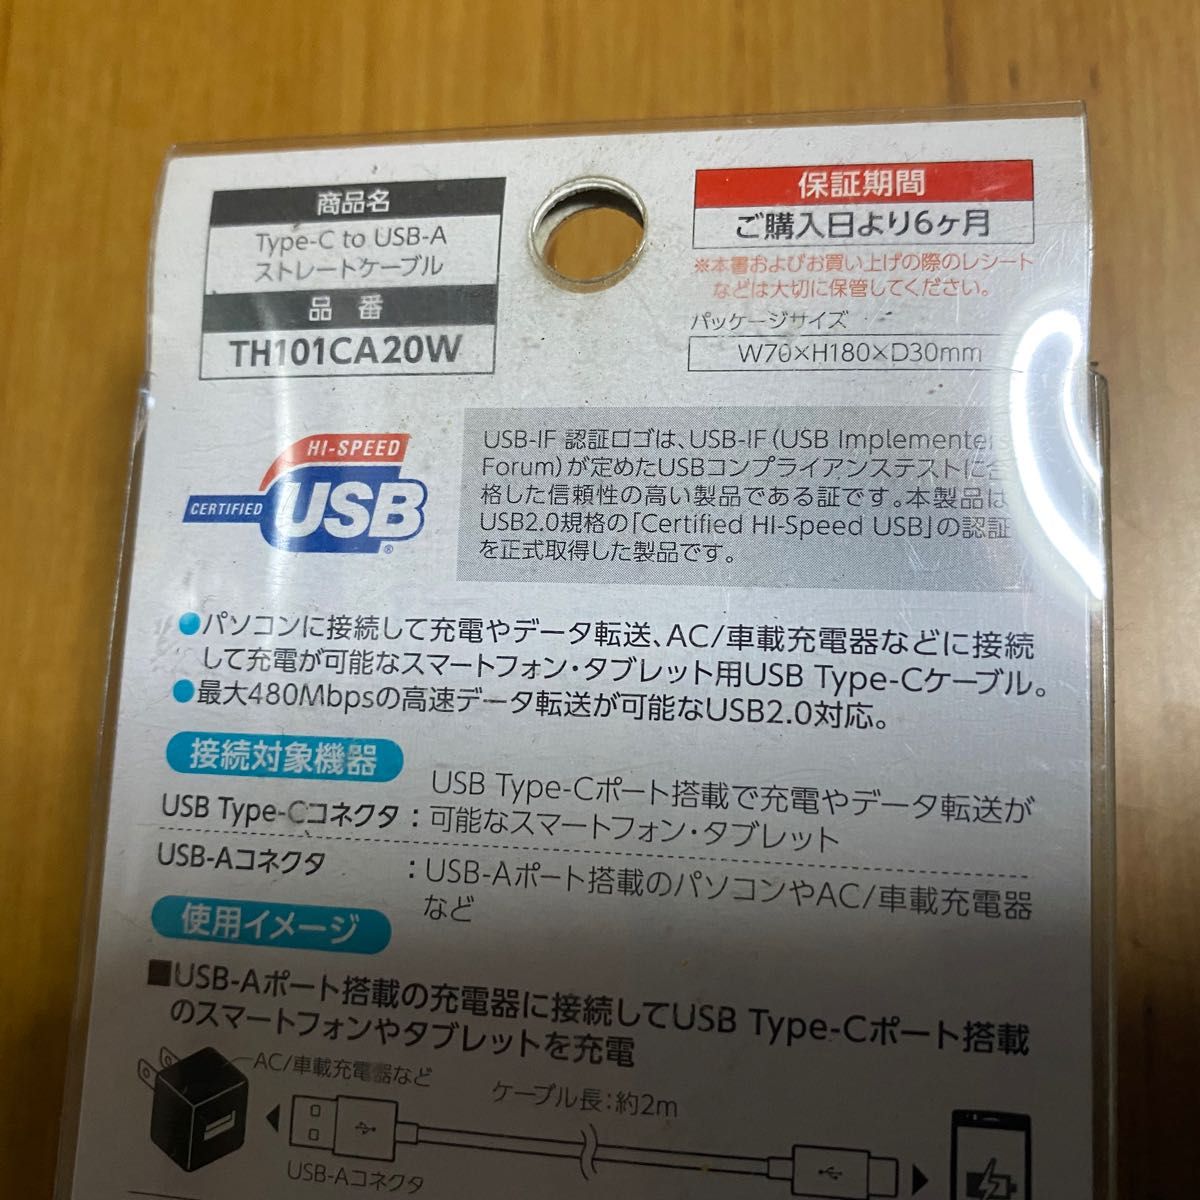 多摩電子 TH101CA20W(ホワイト) Type-C to USB-A ストレ-トケ-ブル 2m